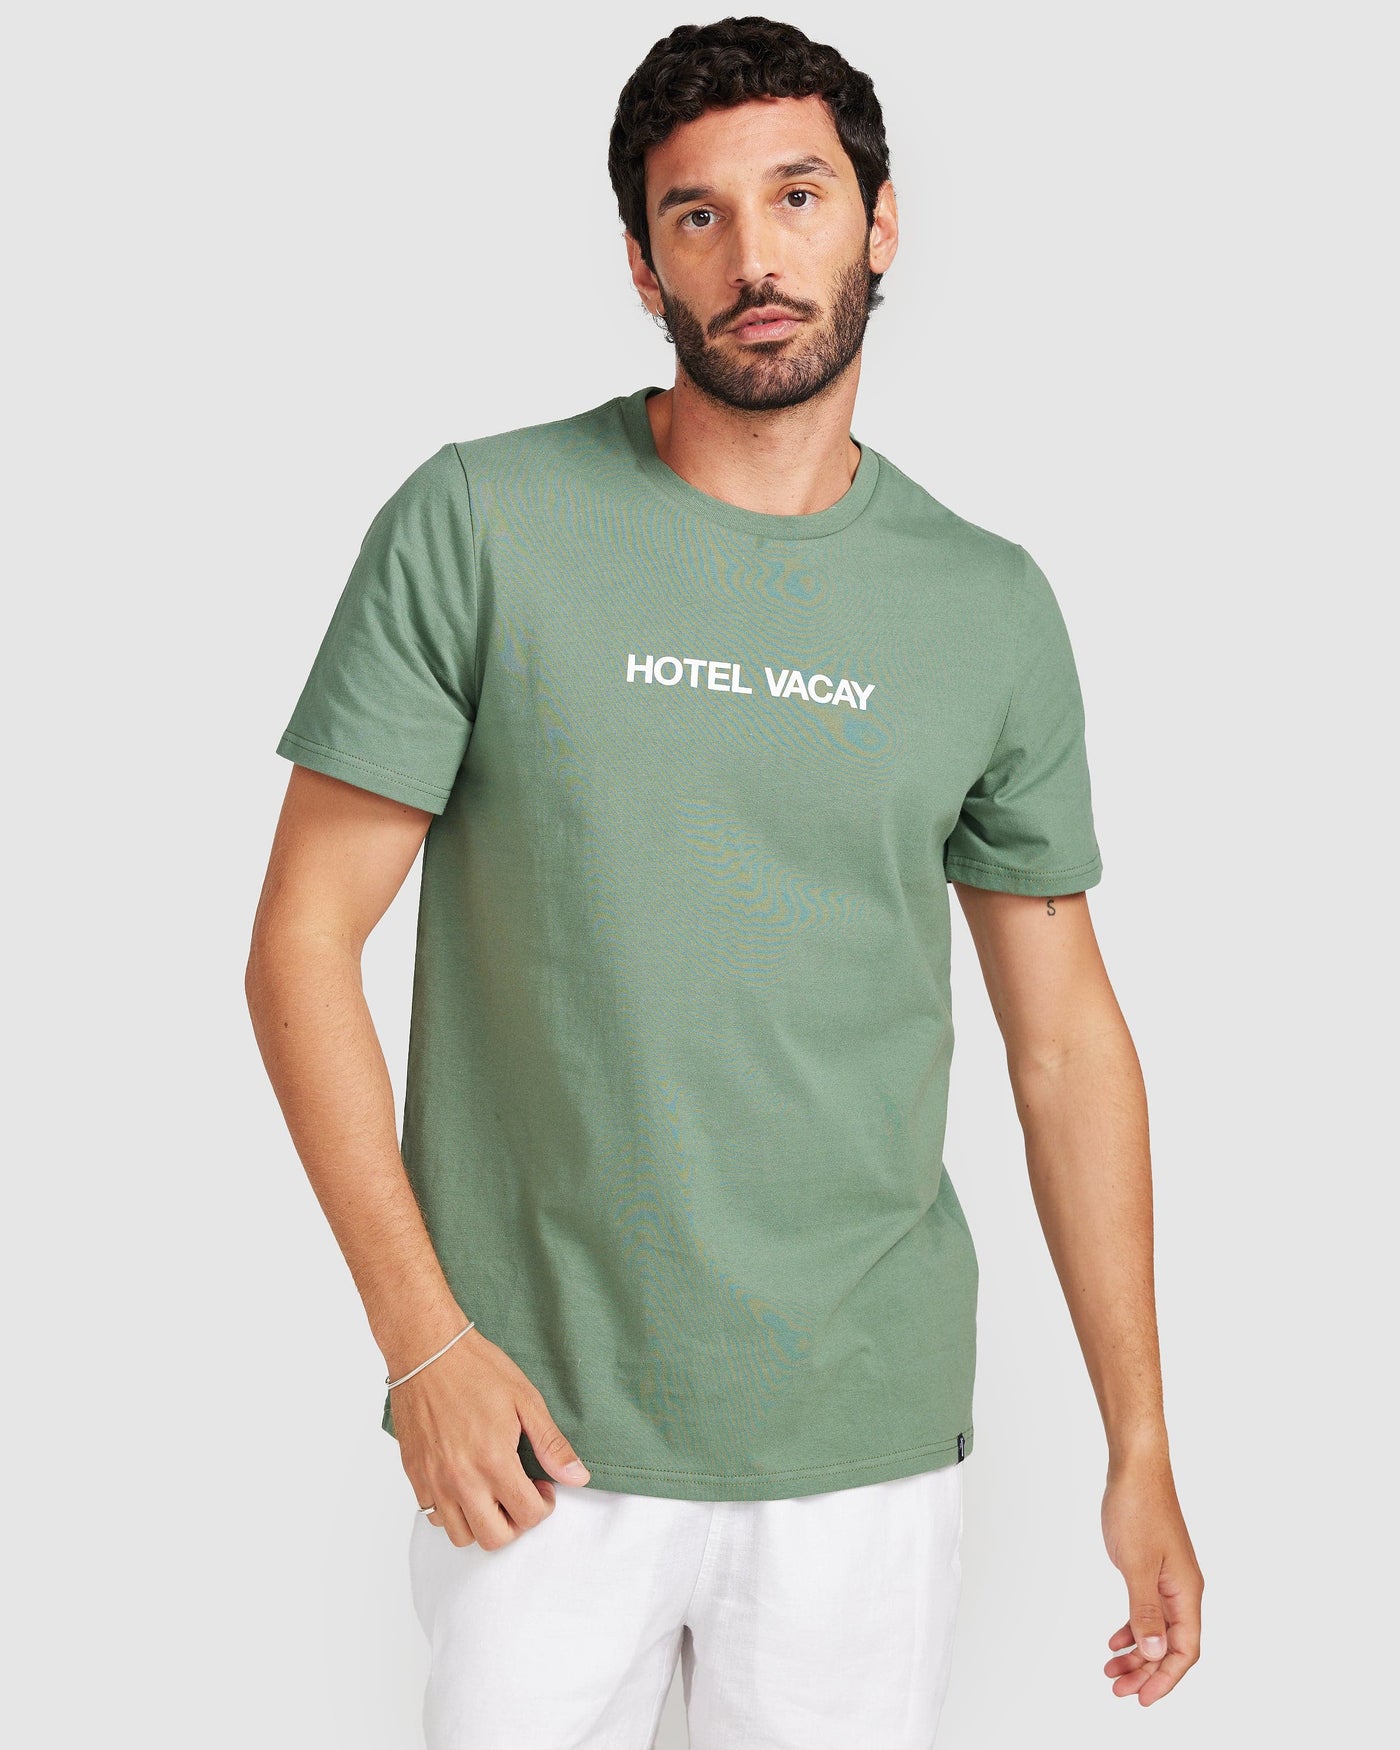 Hotel Vacay T-Shirt